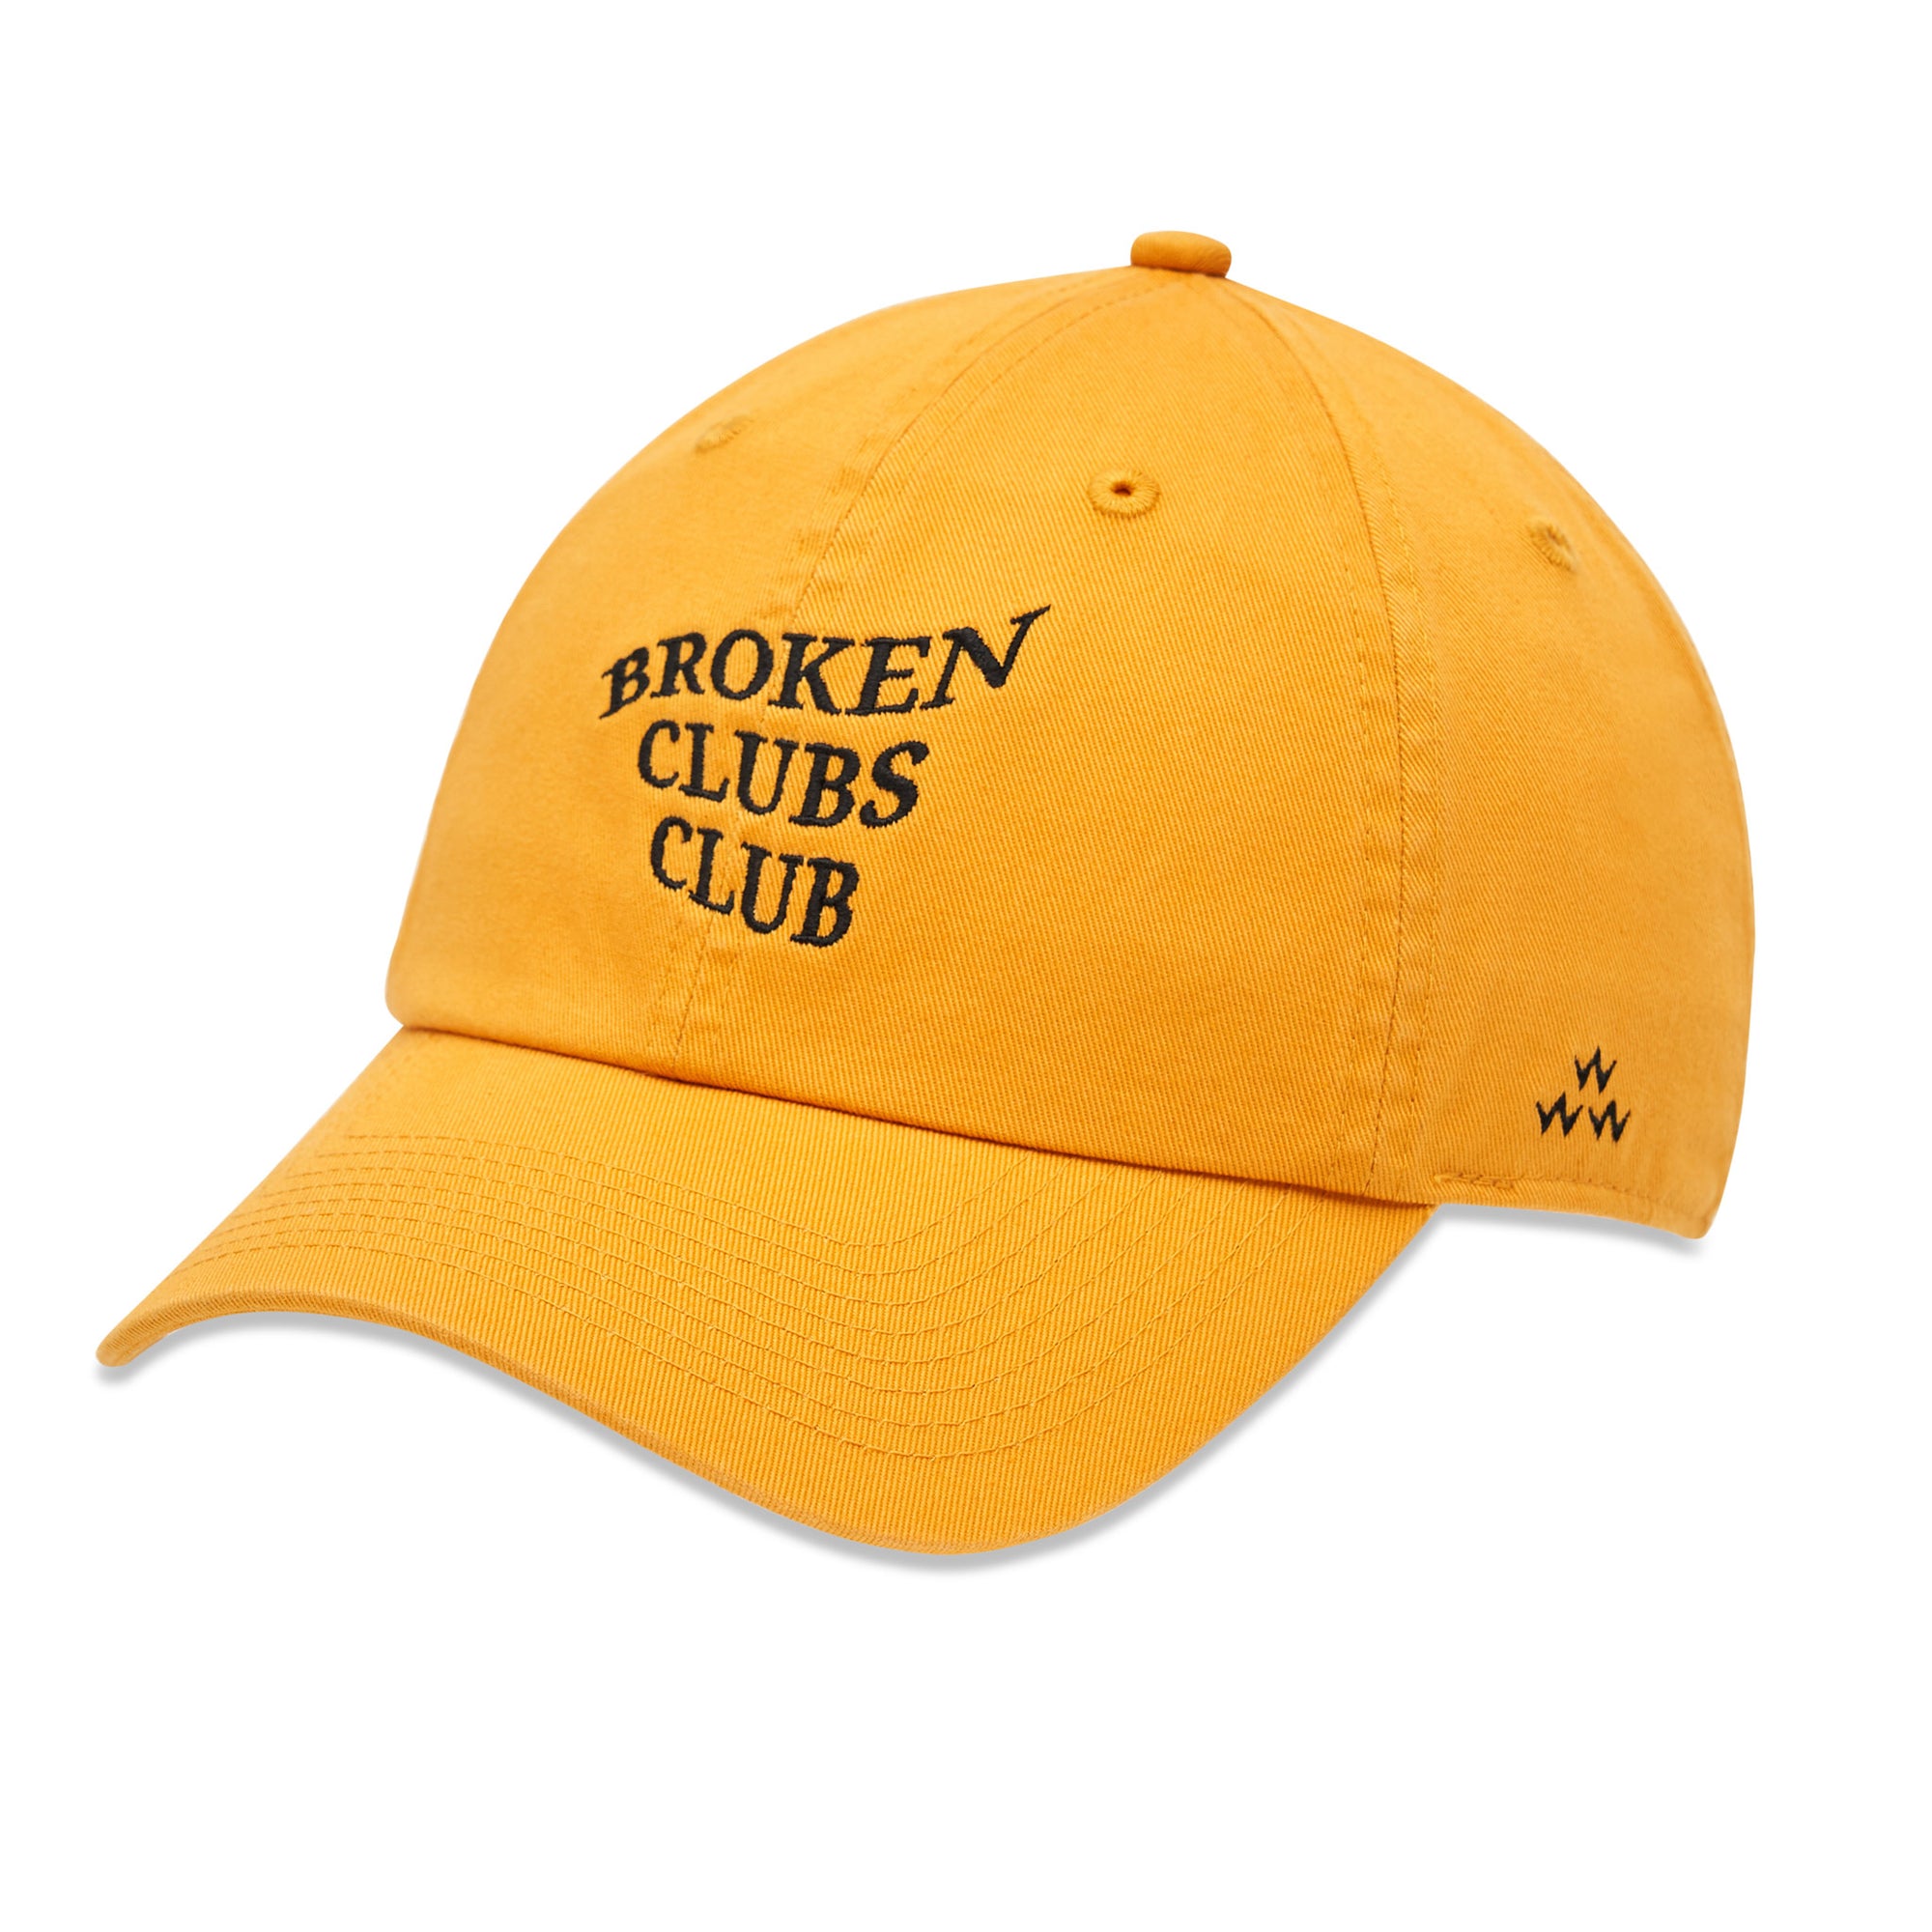 birds-of-condor-yellow-golf-broken-clubs-club-dad-cap-hat-front